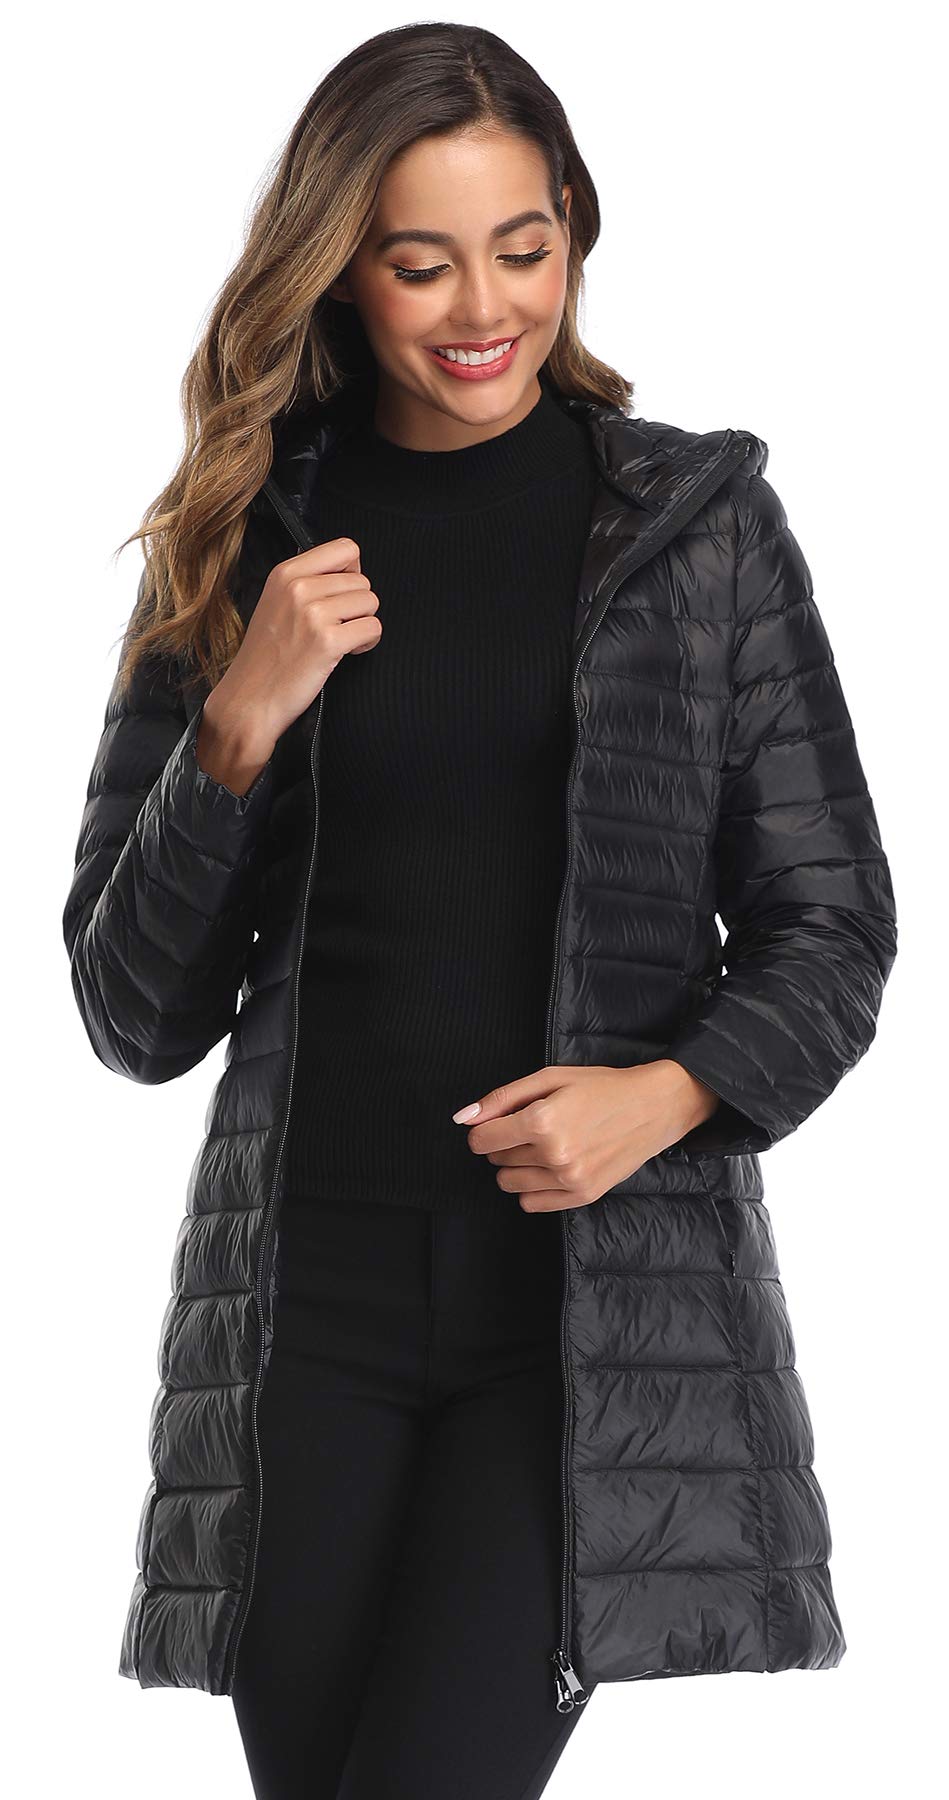 Obosoyo Women's Winter Packable Down Jacket Plus Size Lightweight Long Down Outerwear Puffer Jacket Hooded Coat Black XL